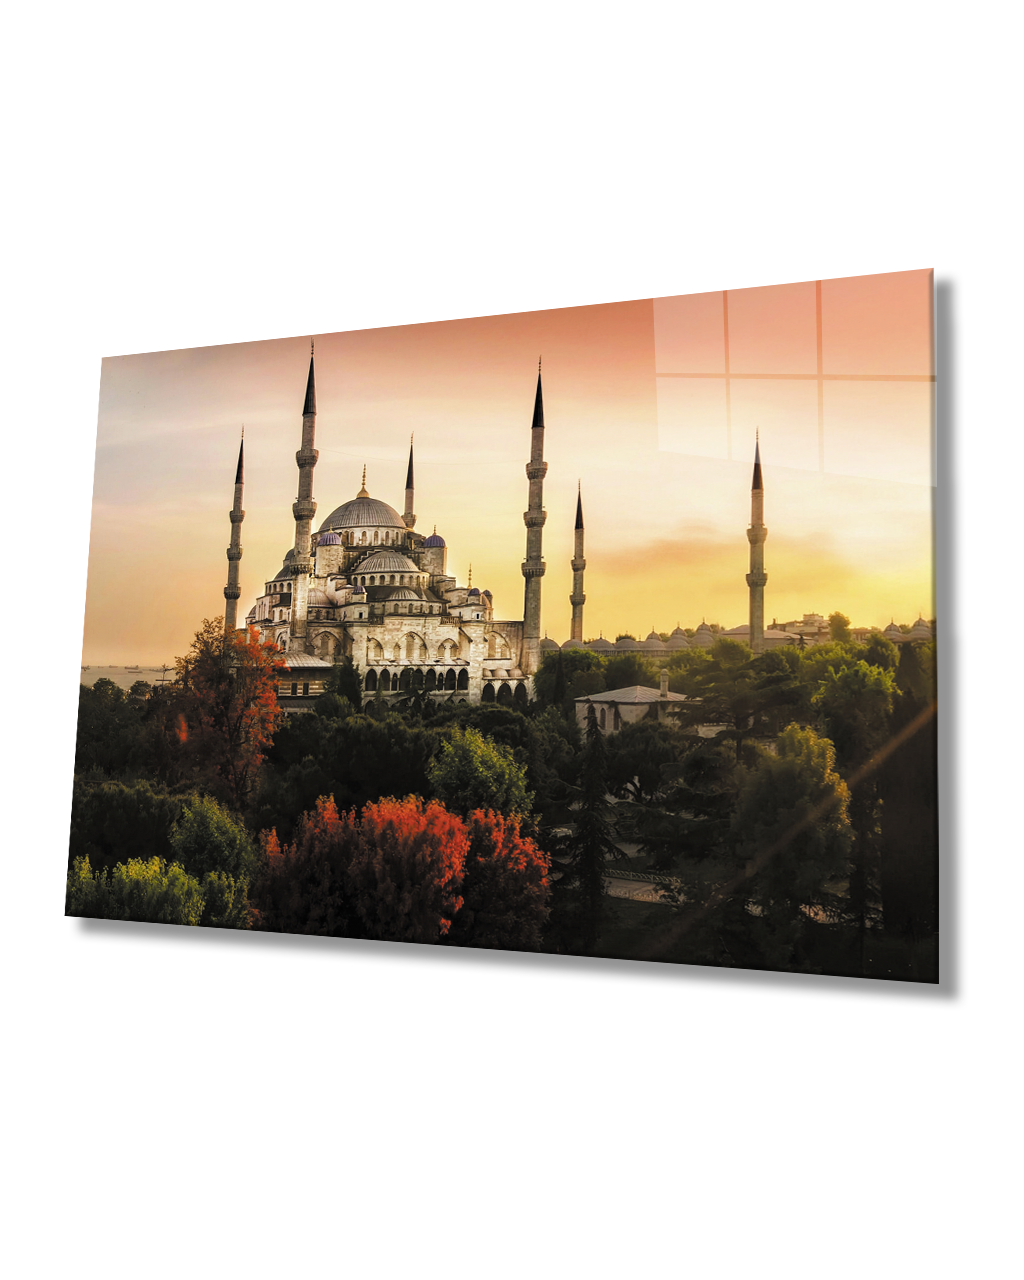 İstanbul GünBatımı Sultan Ahmet Camii Cam Tablo 4mm Dayanıklı Temperli Cam